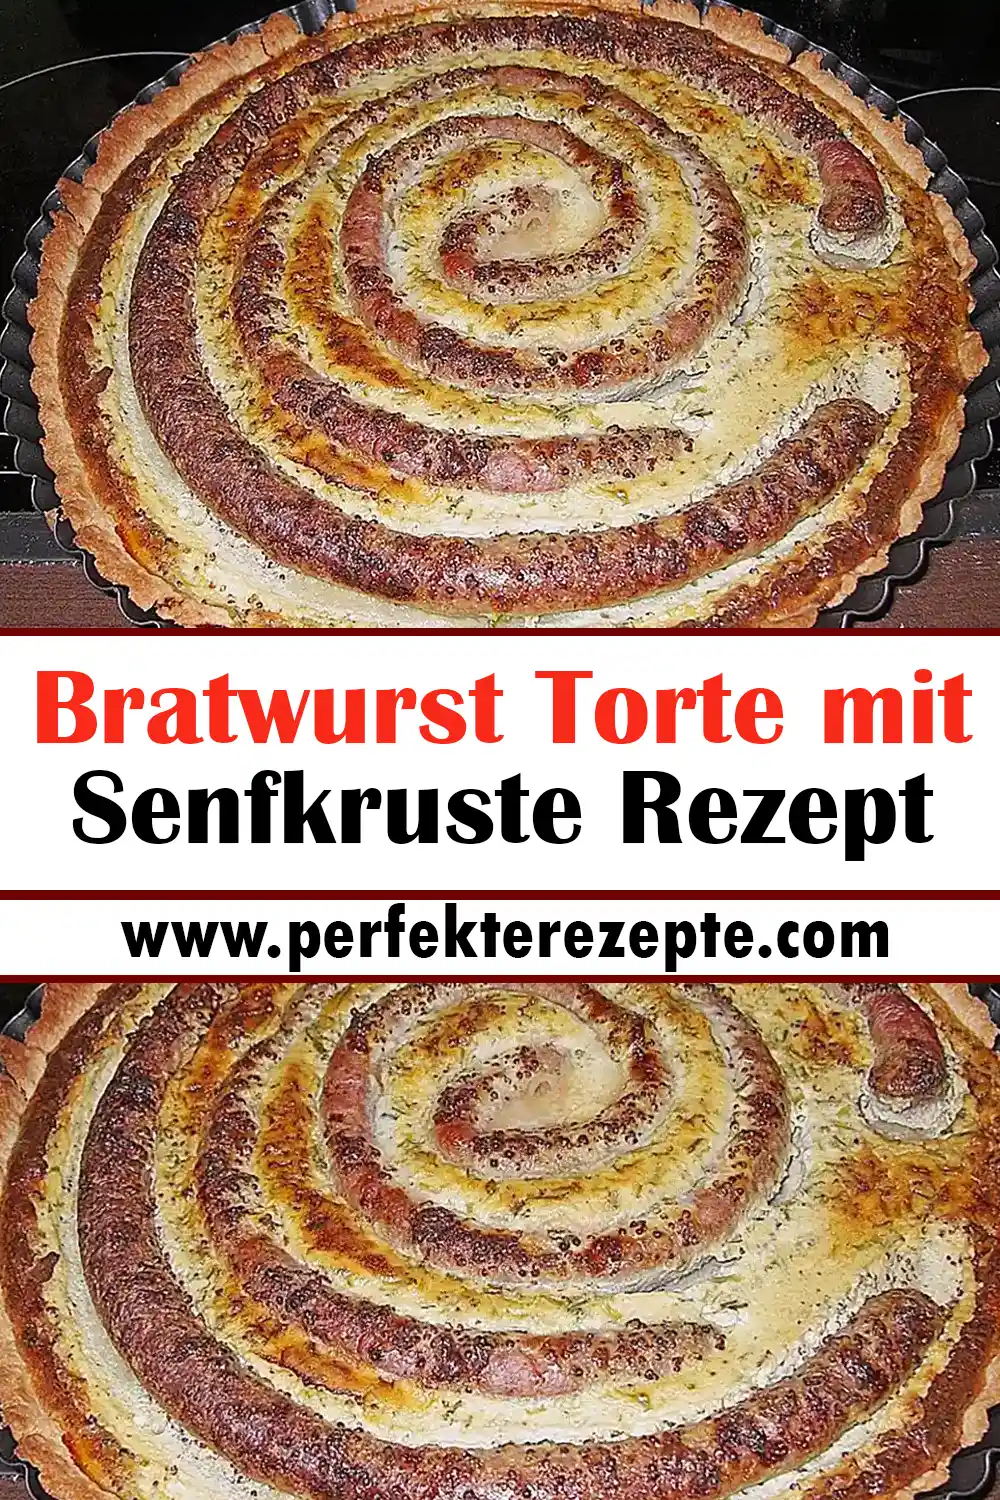 Bratwurst Torte mit Senfkruste Rezept